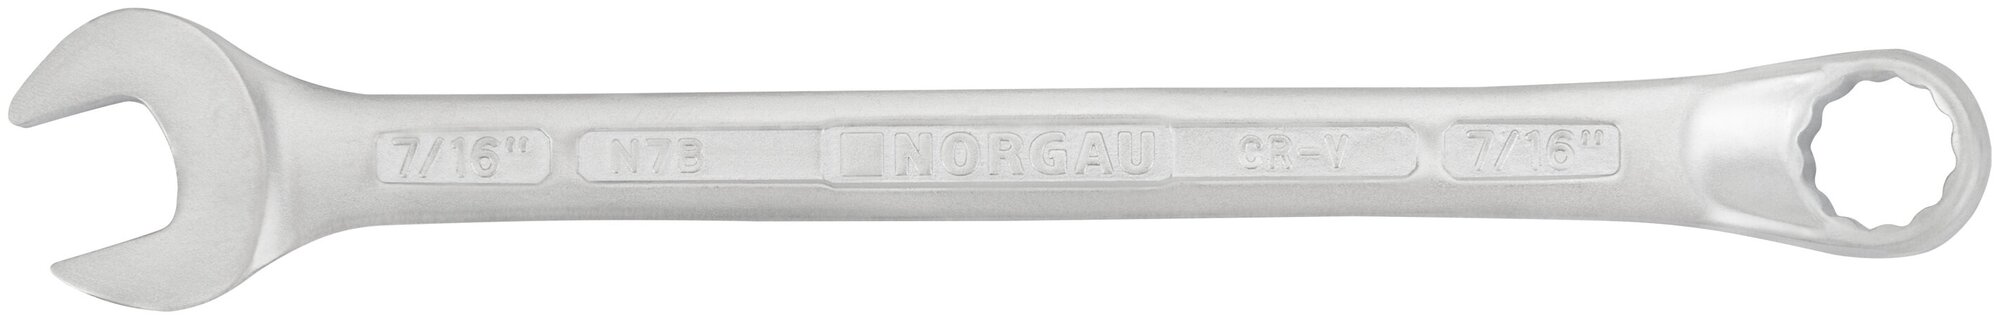 Ключ гаечный 7/16" NORGAU Industrial "HРM" High precision machining 160 мм рожковый и накидной профиль.